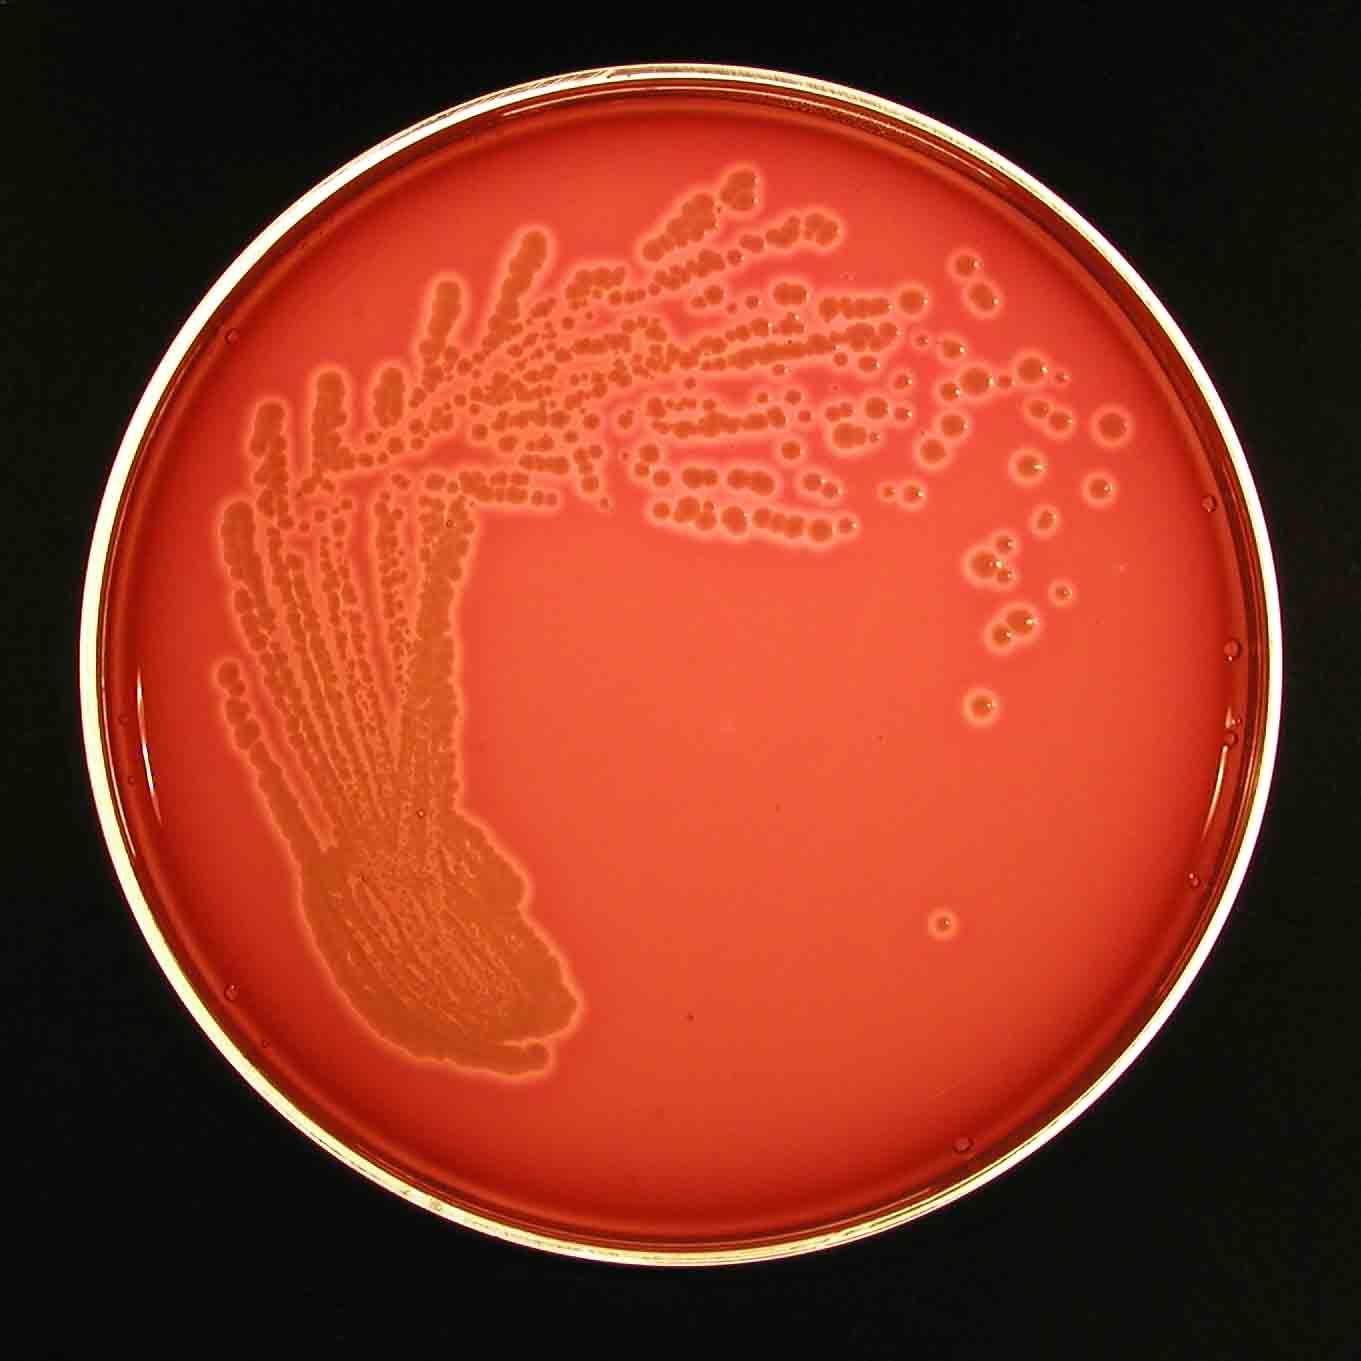 Coli sotwe. Эшерихии. Е. coli. Апельсиновый агар в микробиологии.